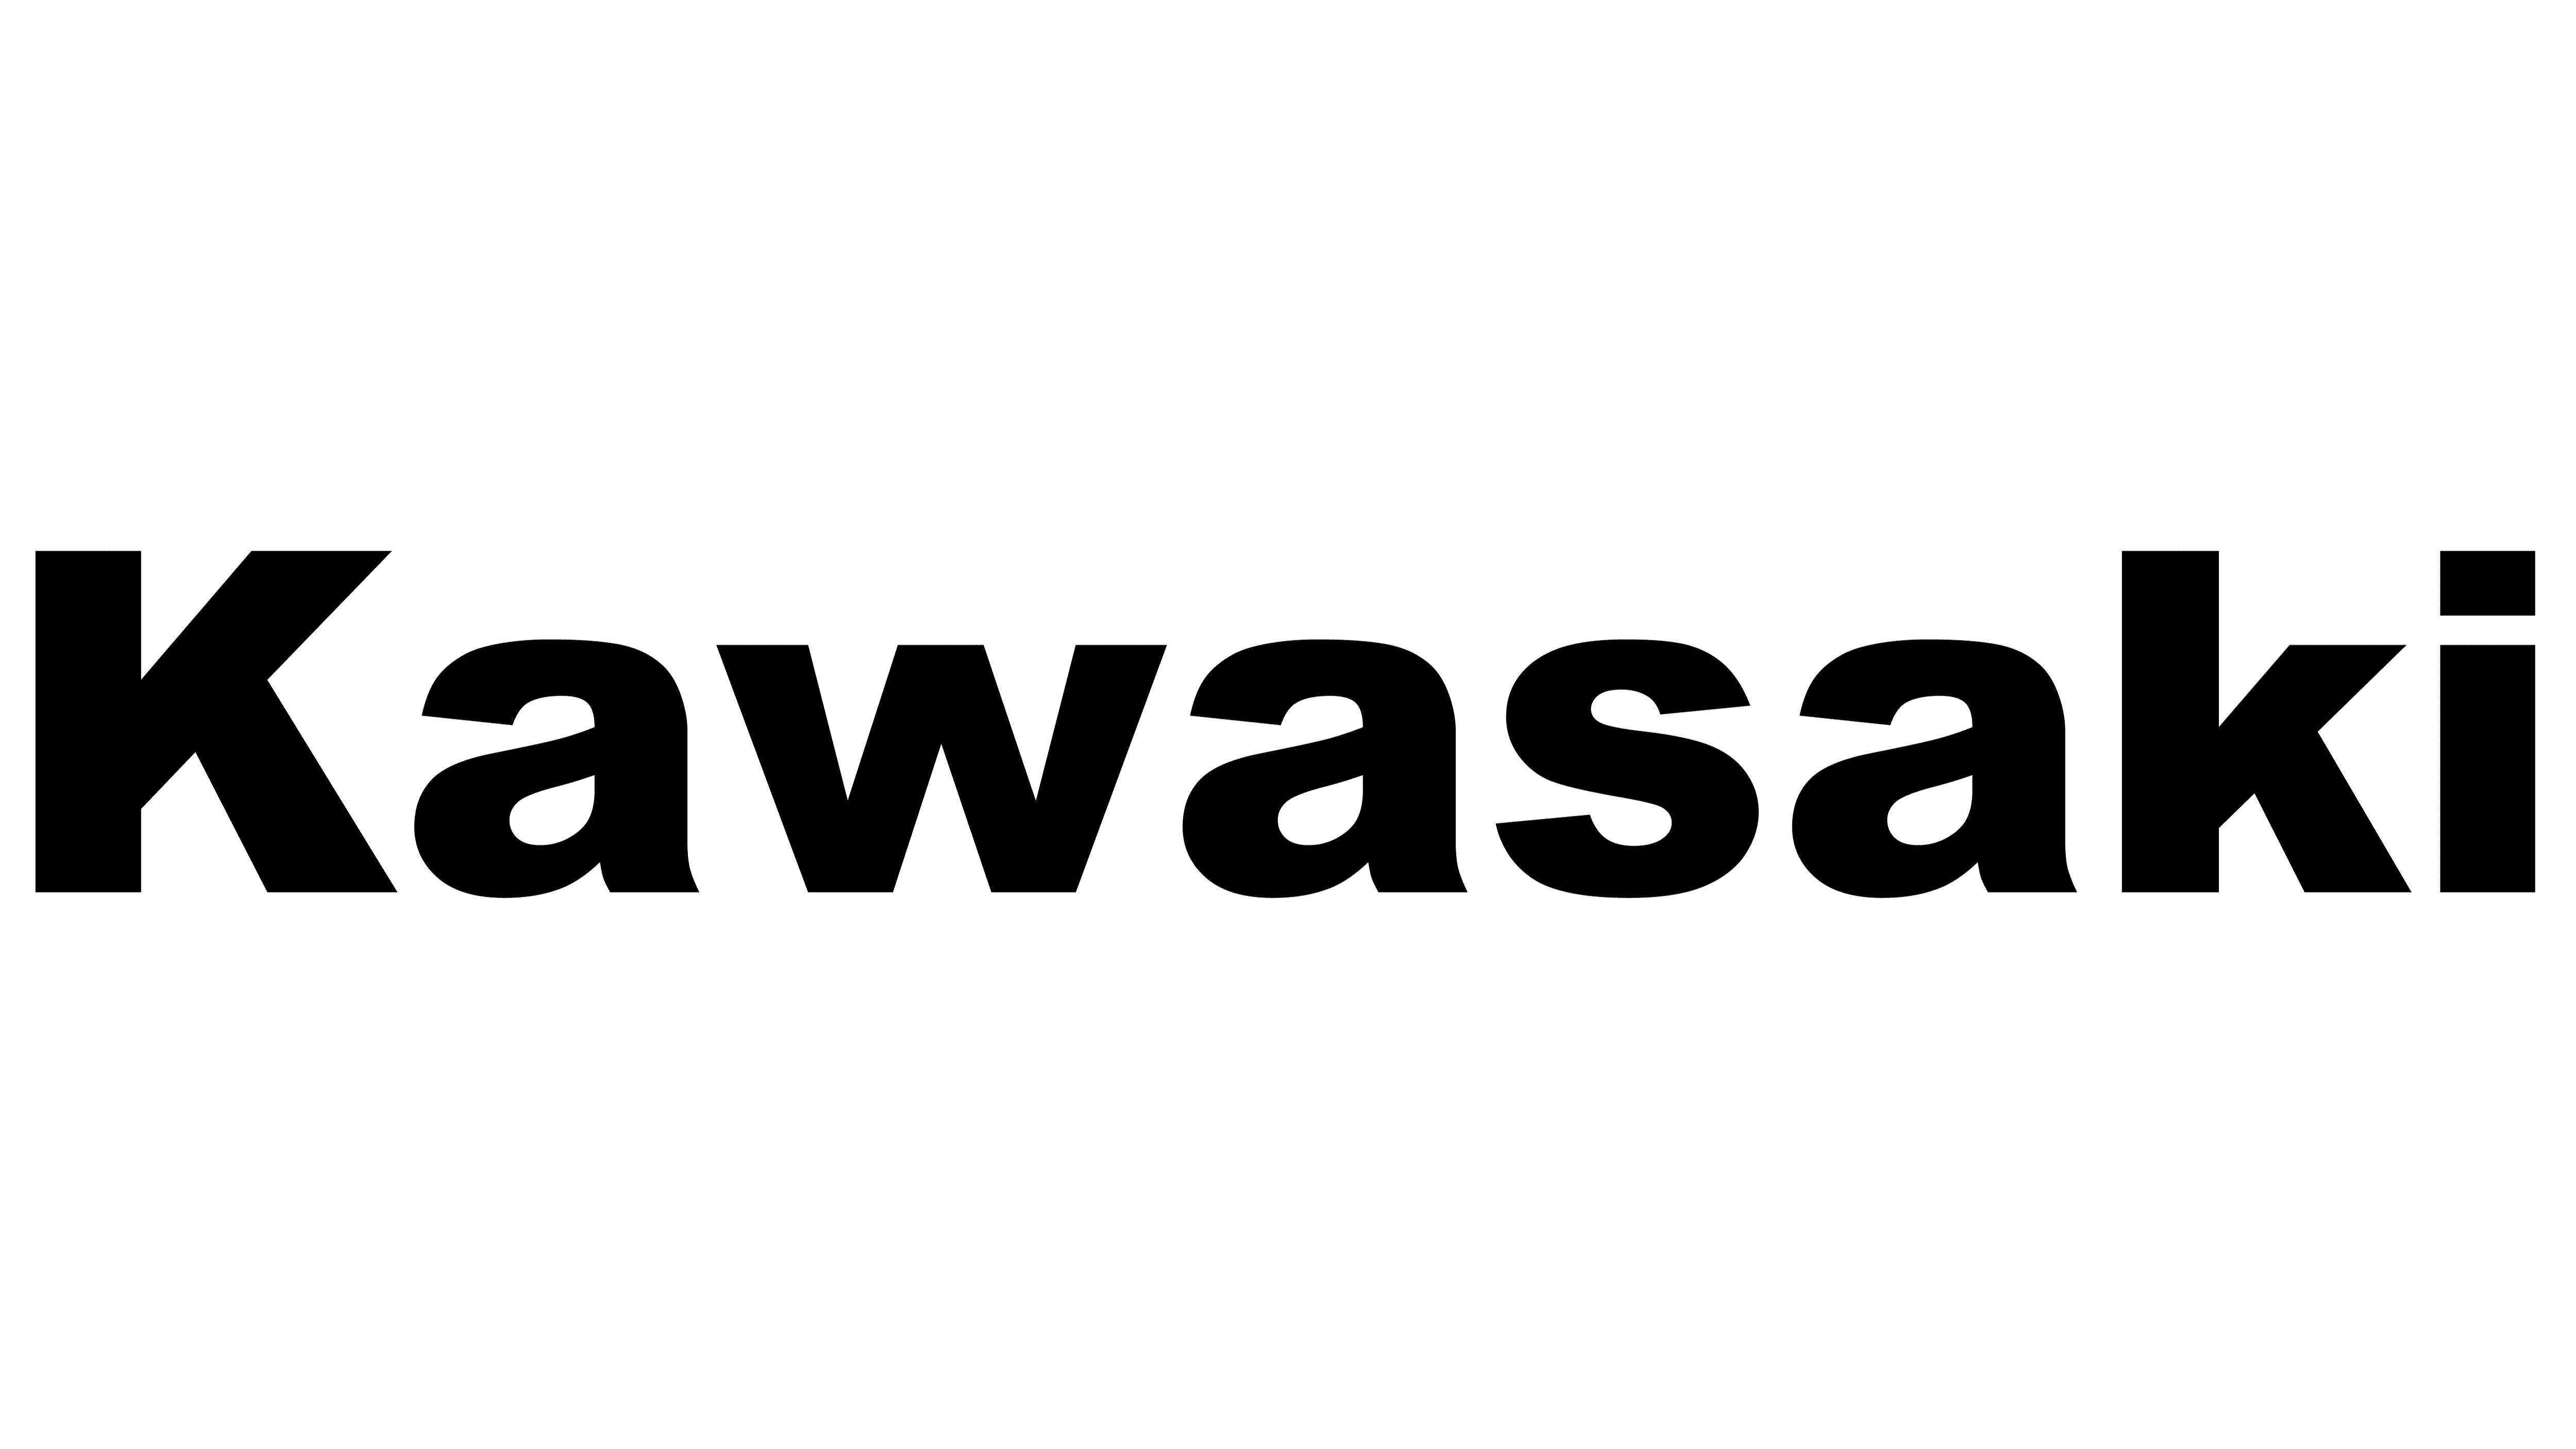 Kawasaki Motorcycle Logo Hist